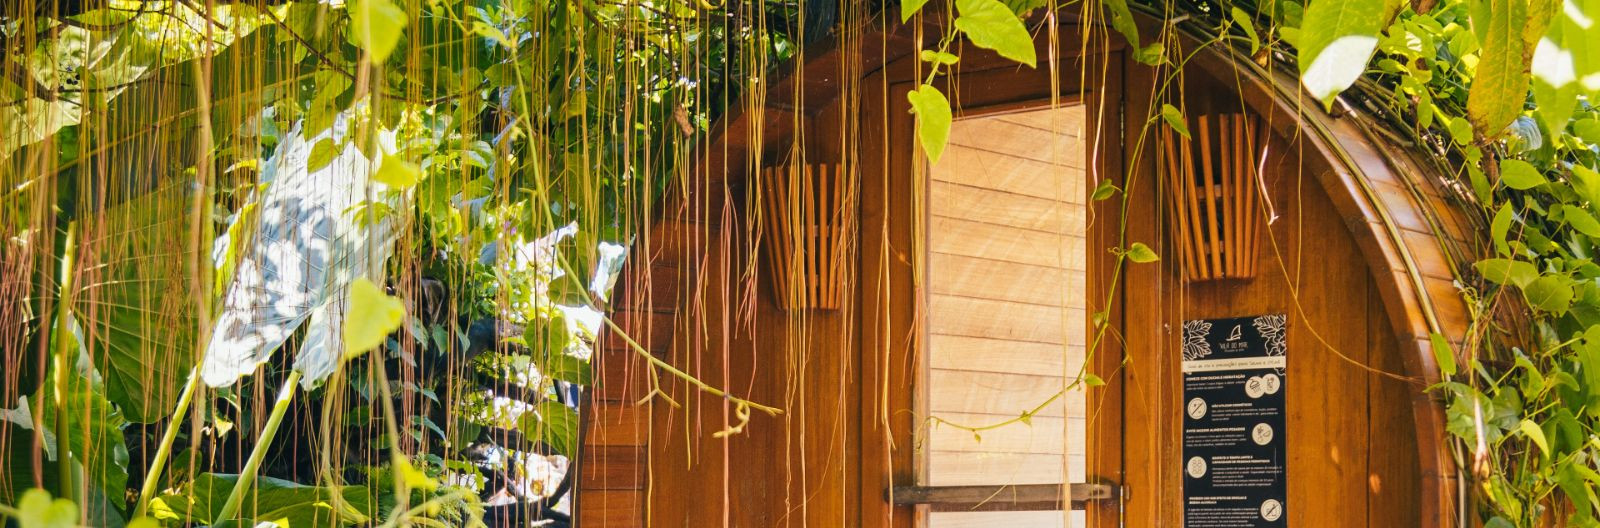 Aurusaun on saunatüüp, mis on viimasel ajal üha enam populaarsust kogunud tänu oma mitmetele tervistavatele omadustele. Aurusaun erineb tavalisest saunast selle